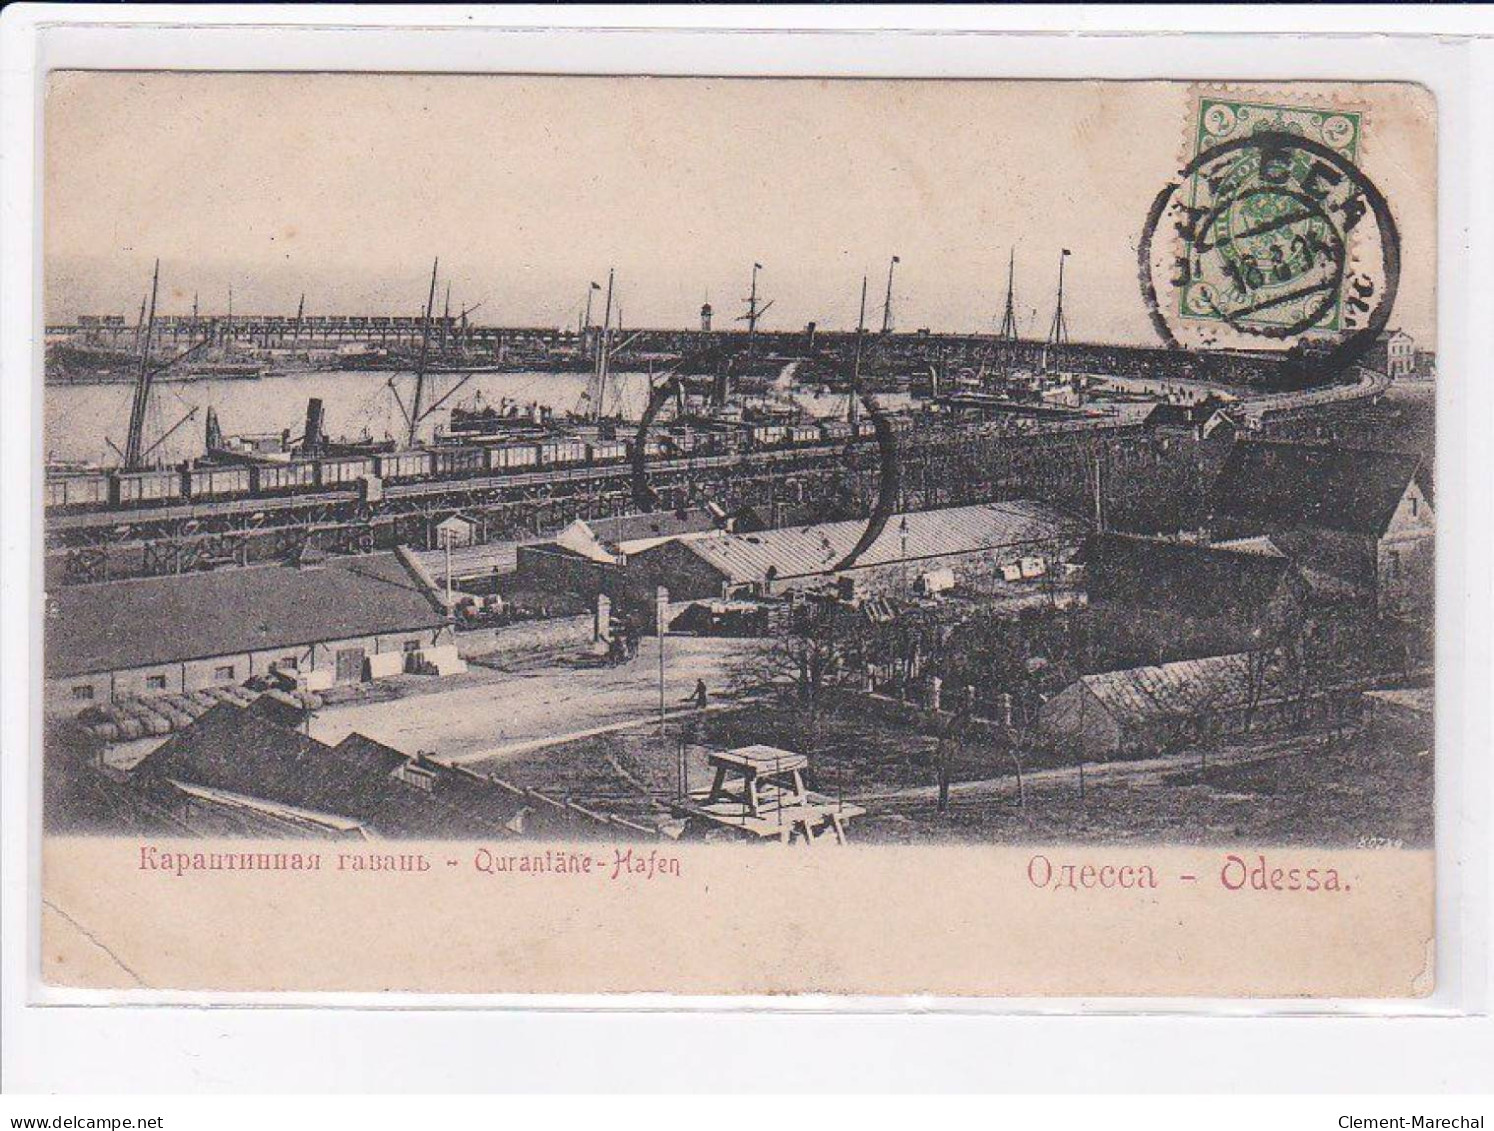 UKRAINE : ODESSA - Qurantane Hafen (Quarantaine - Port) - état - Ukraine